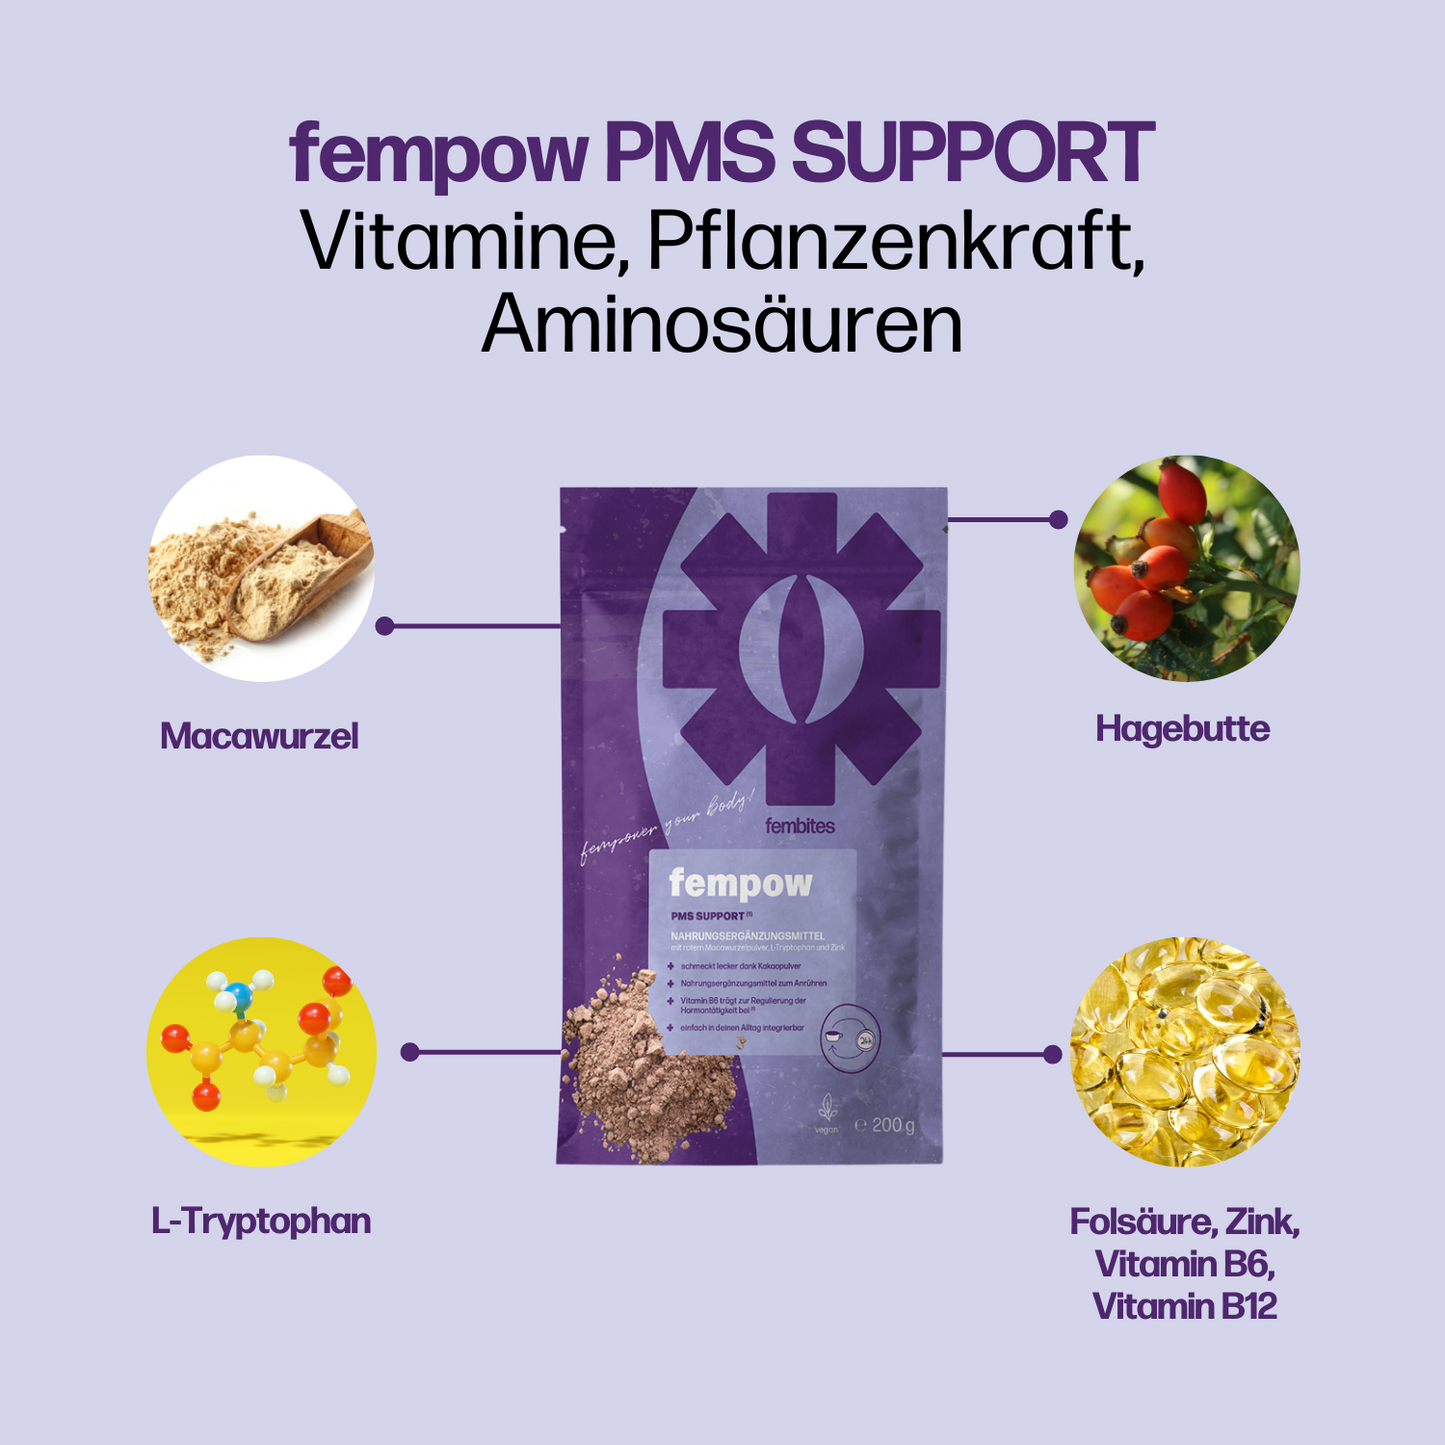 2 Monatskur fempow PMS SUPPORT* - Vitamin B6 trägt zur Regulierung der Hormontätigkeit bei